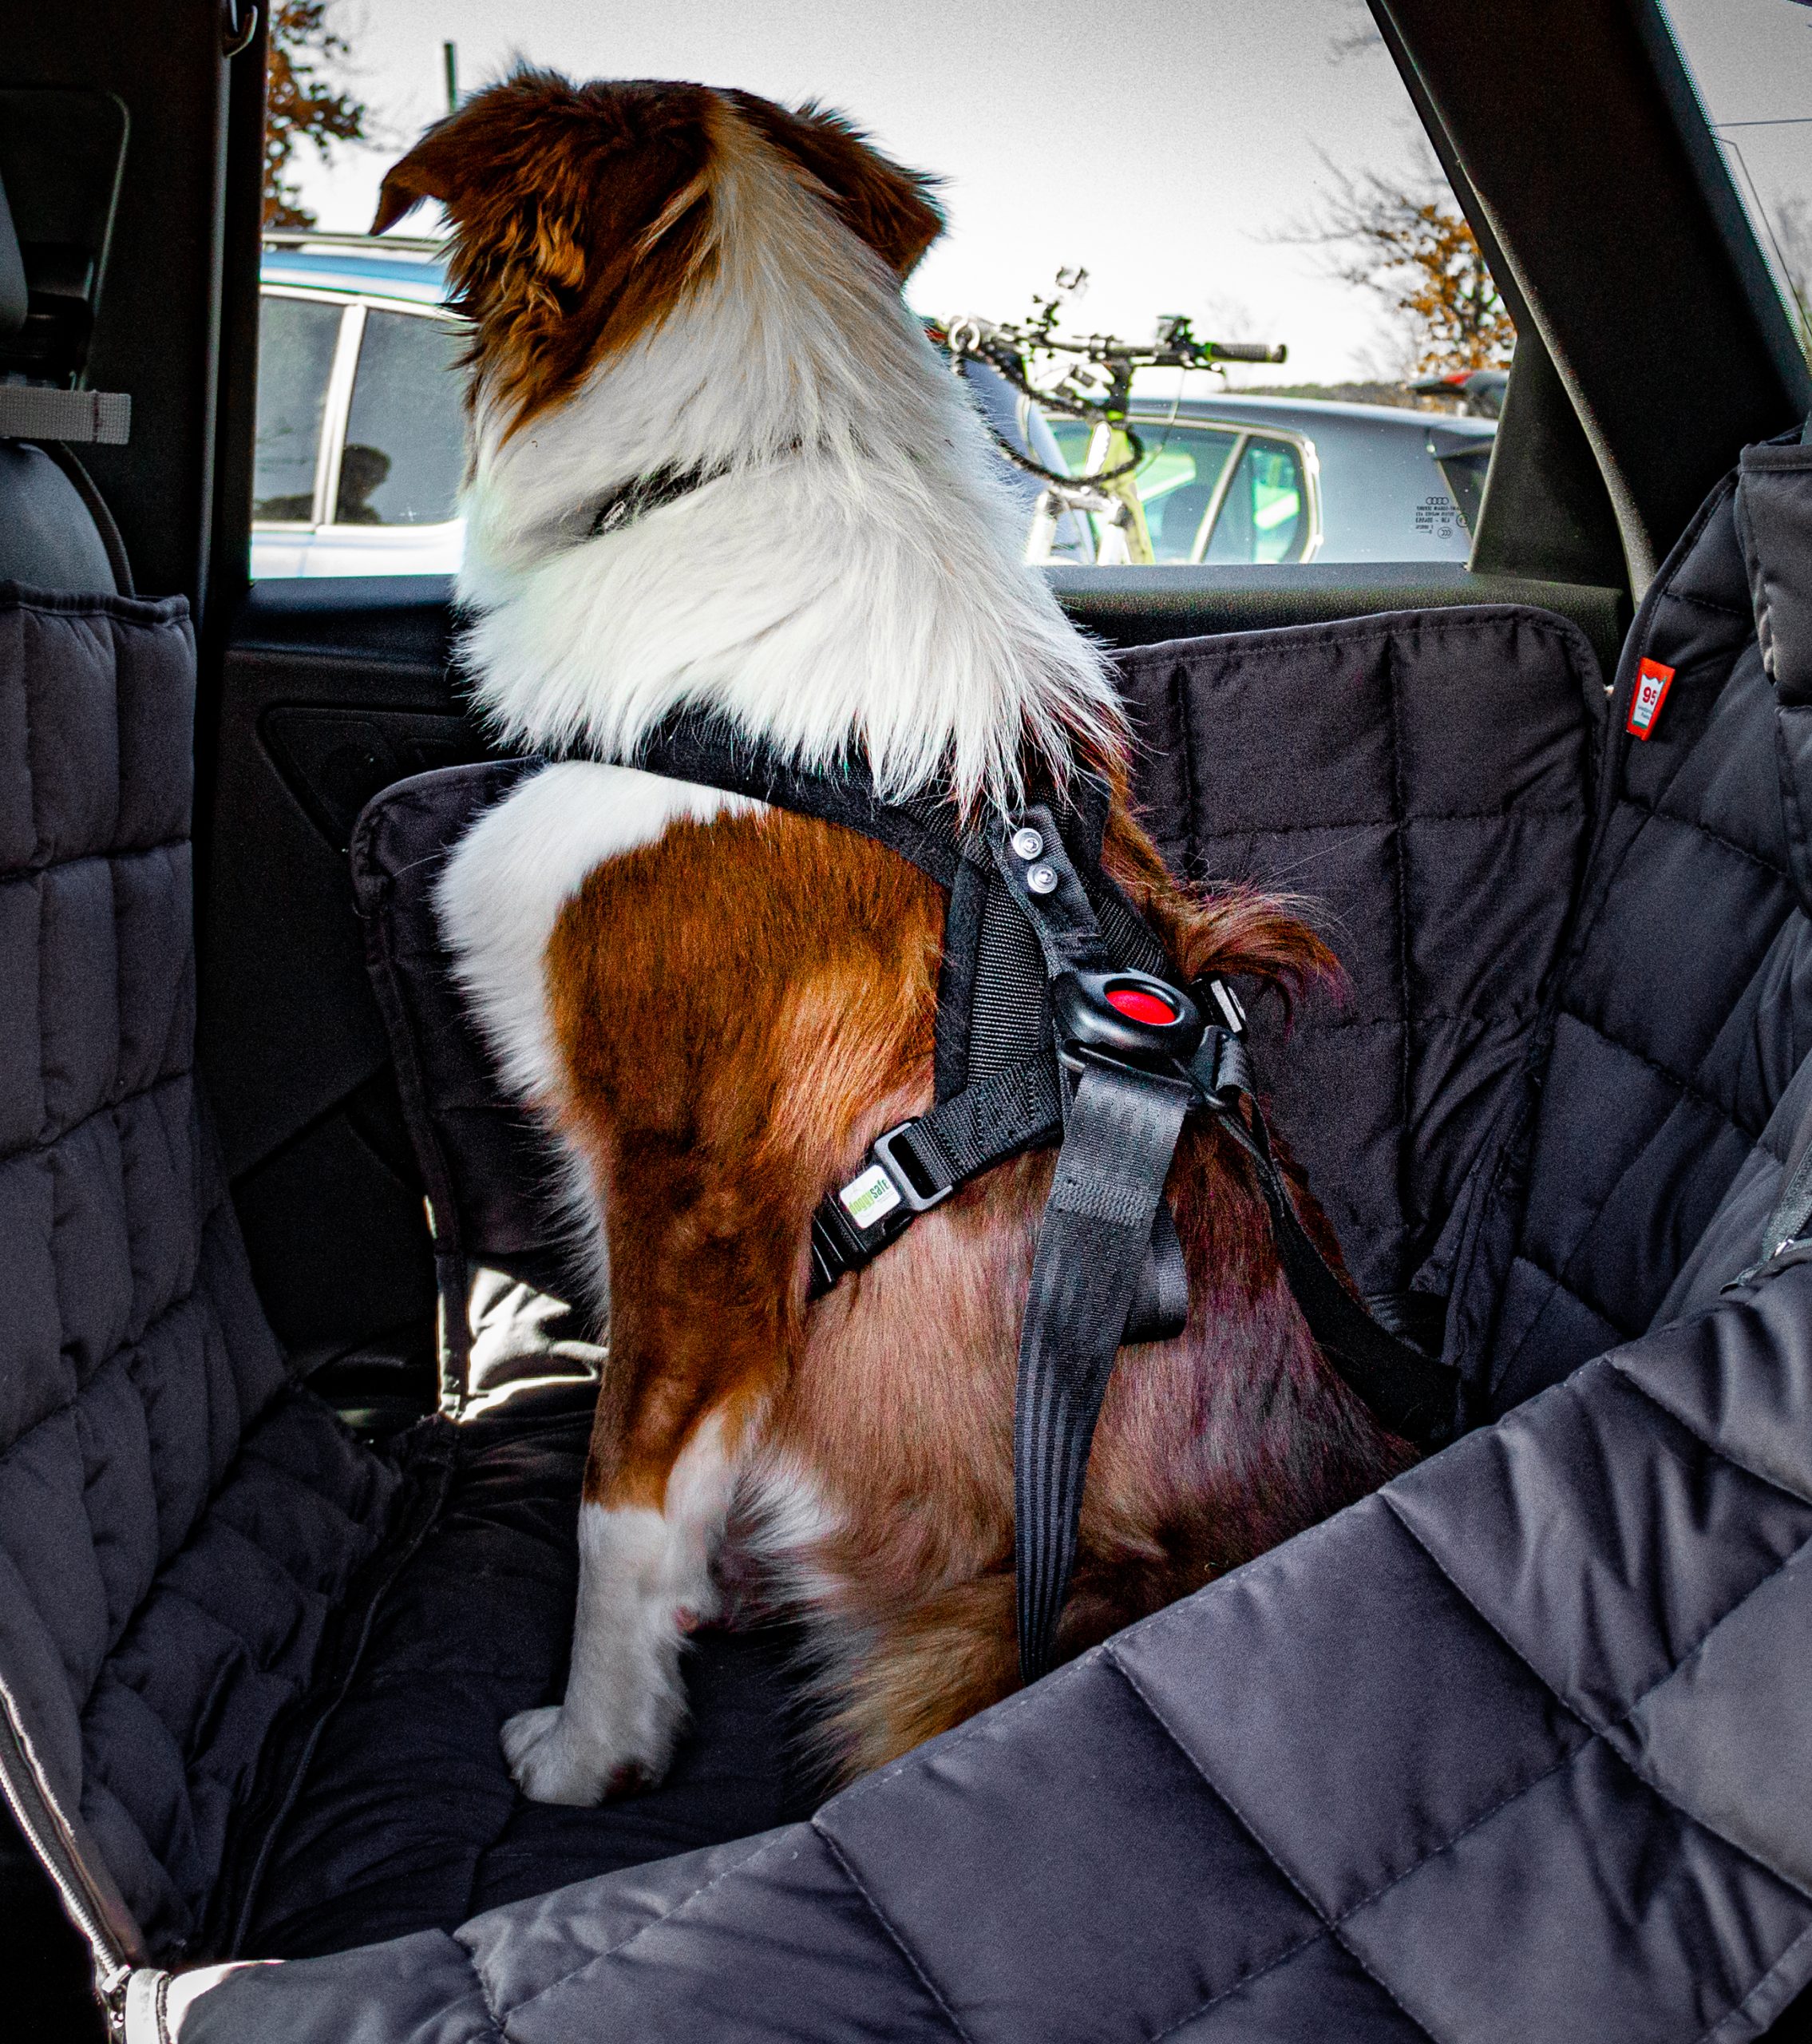 Anschnallgurt für Hunde im Auto 